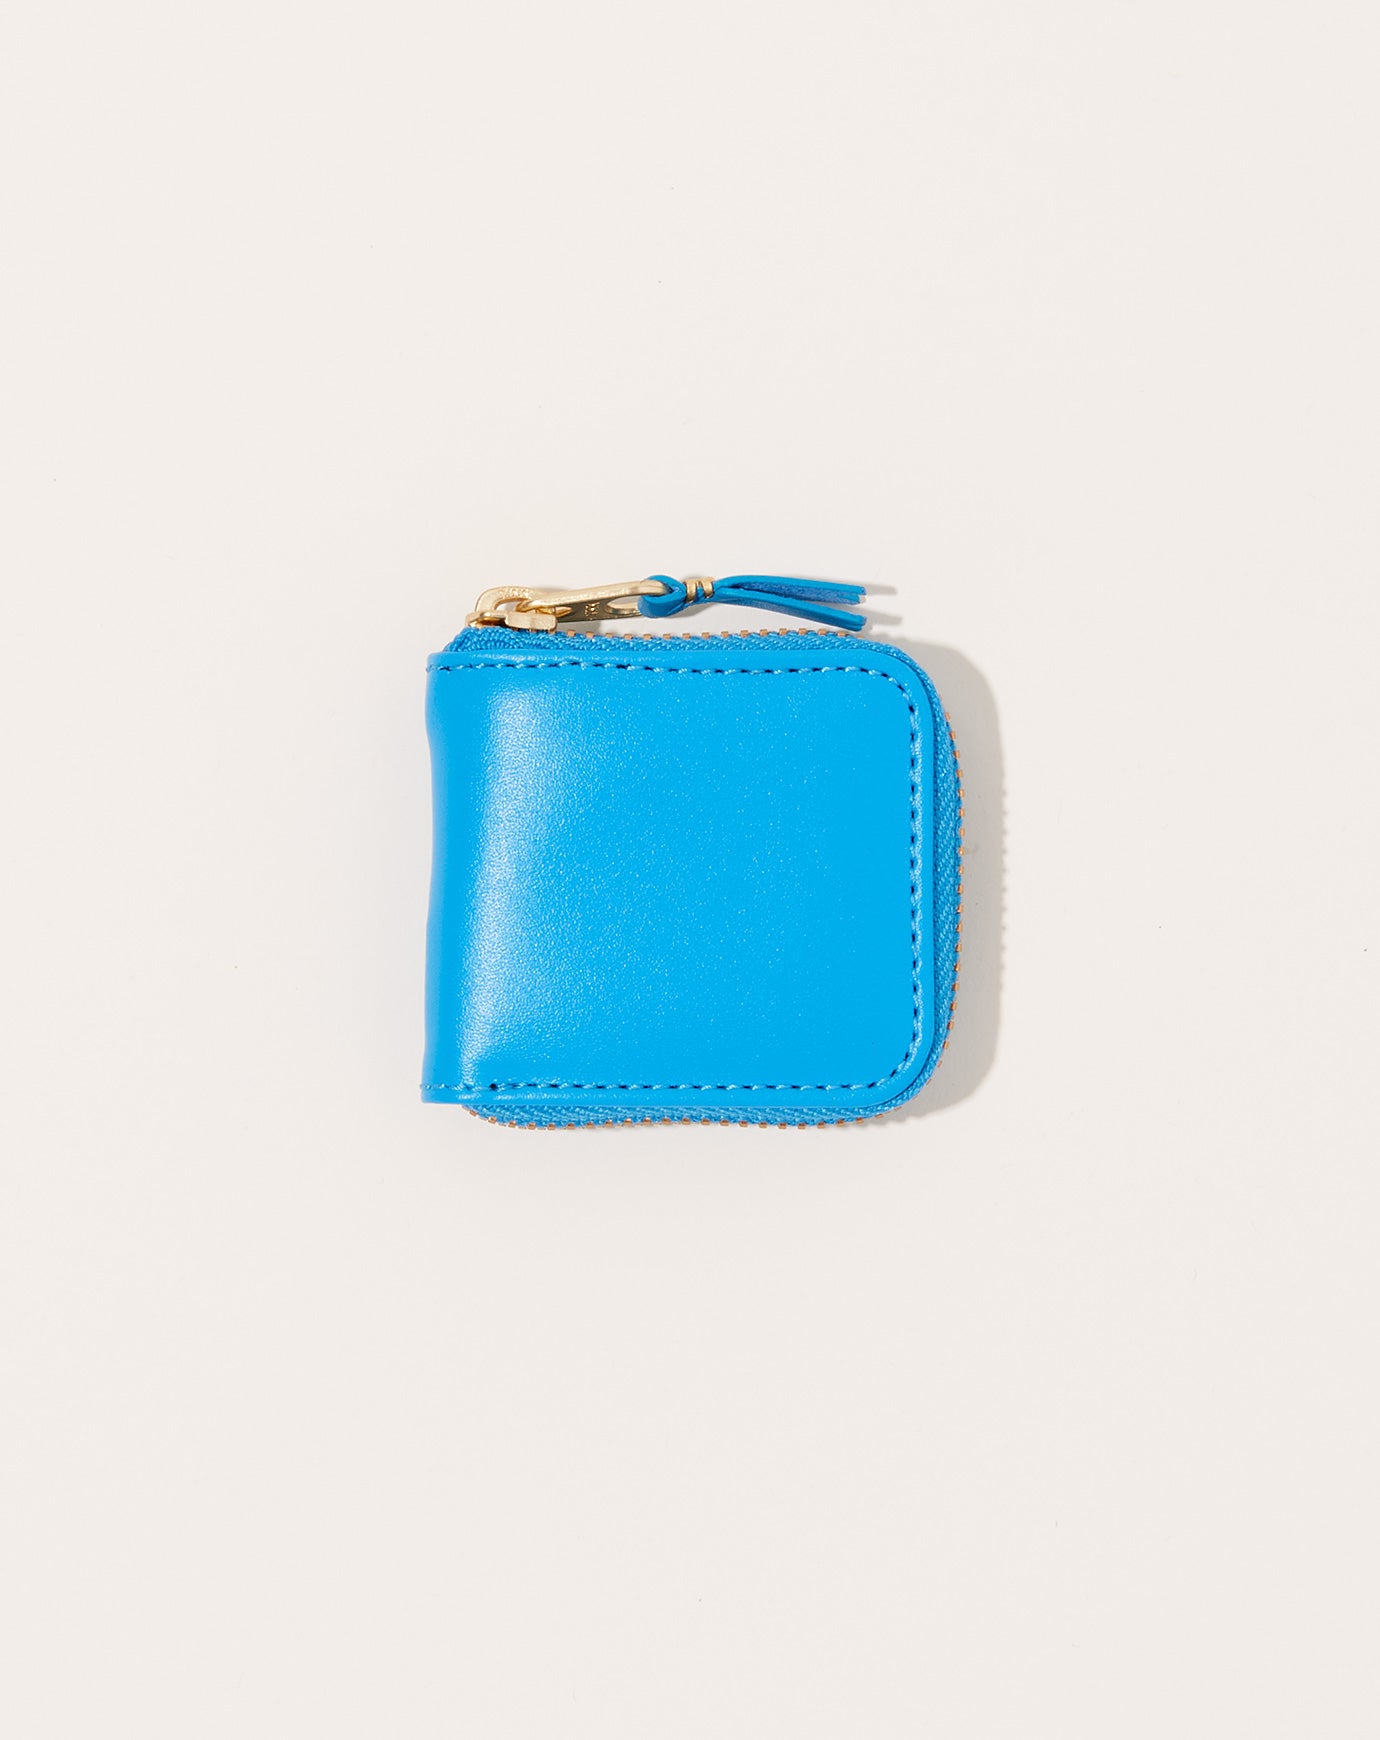 Comme des Garçons  Classic Line Wallet Coin Purse in Blue